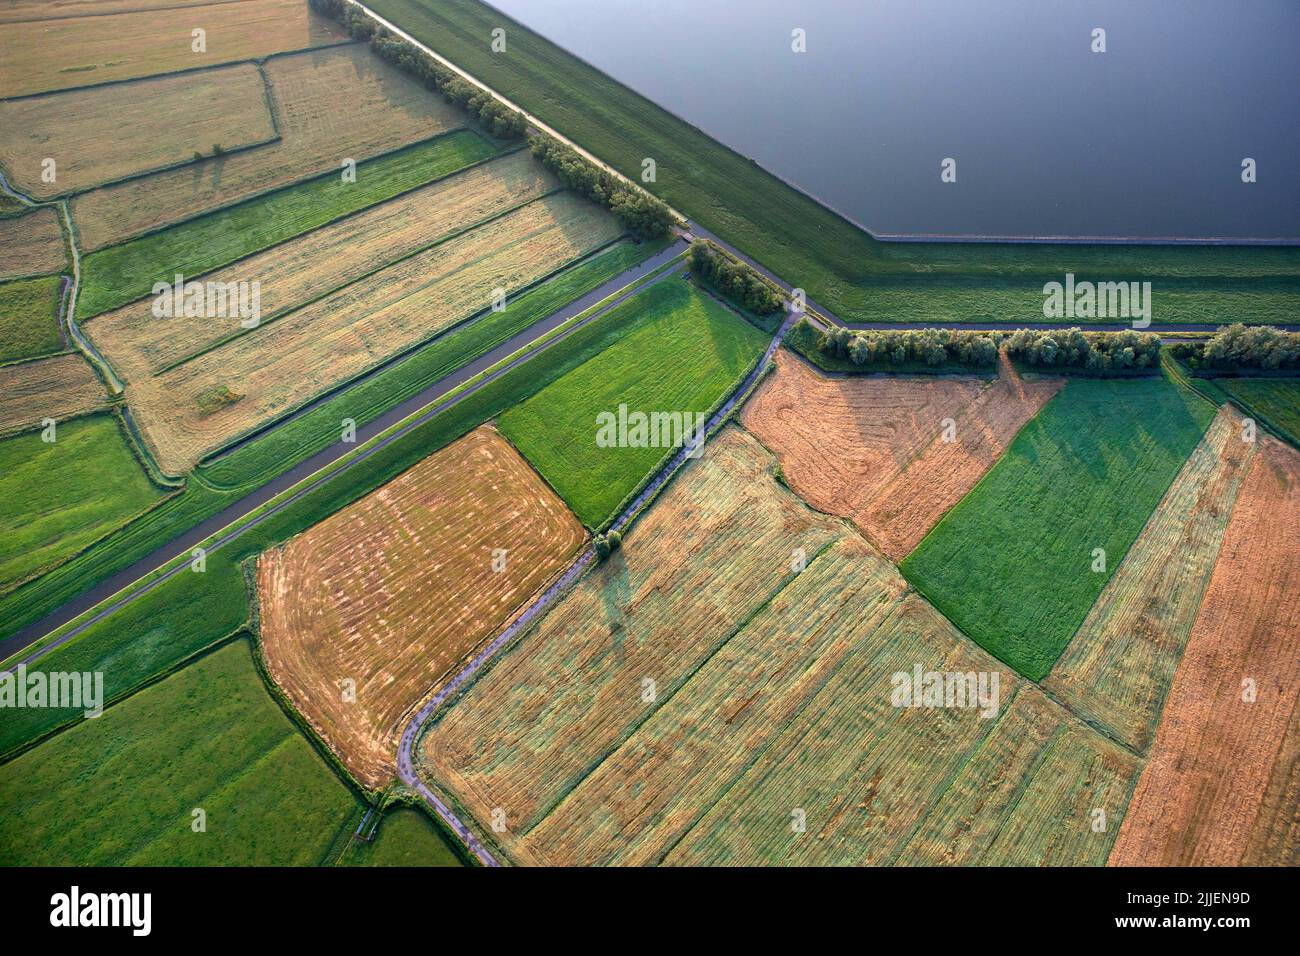 fields and drinking water reservoir de Blankaart, aerial view, Belgium, Flanders, Diksmuide Stock Photo